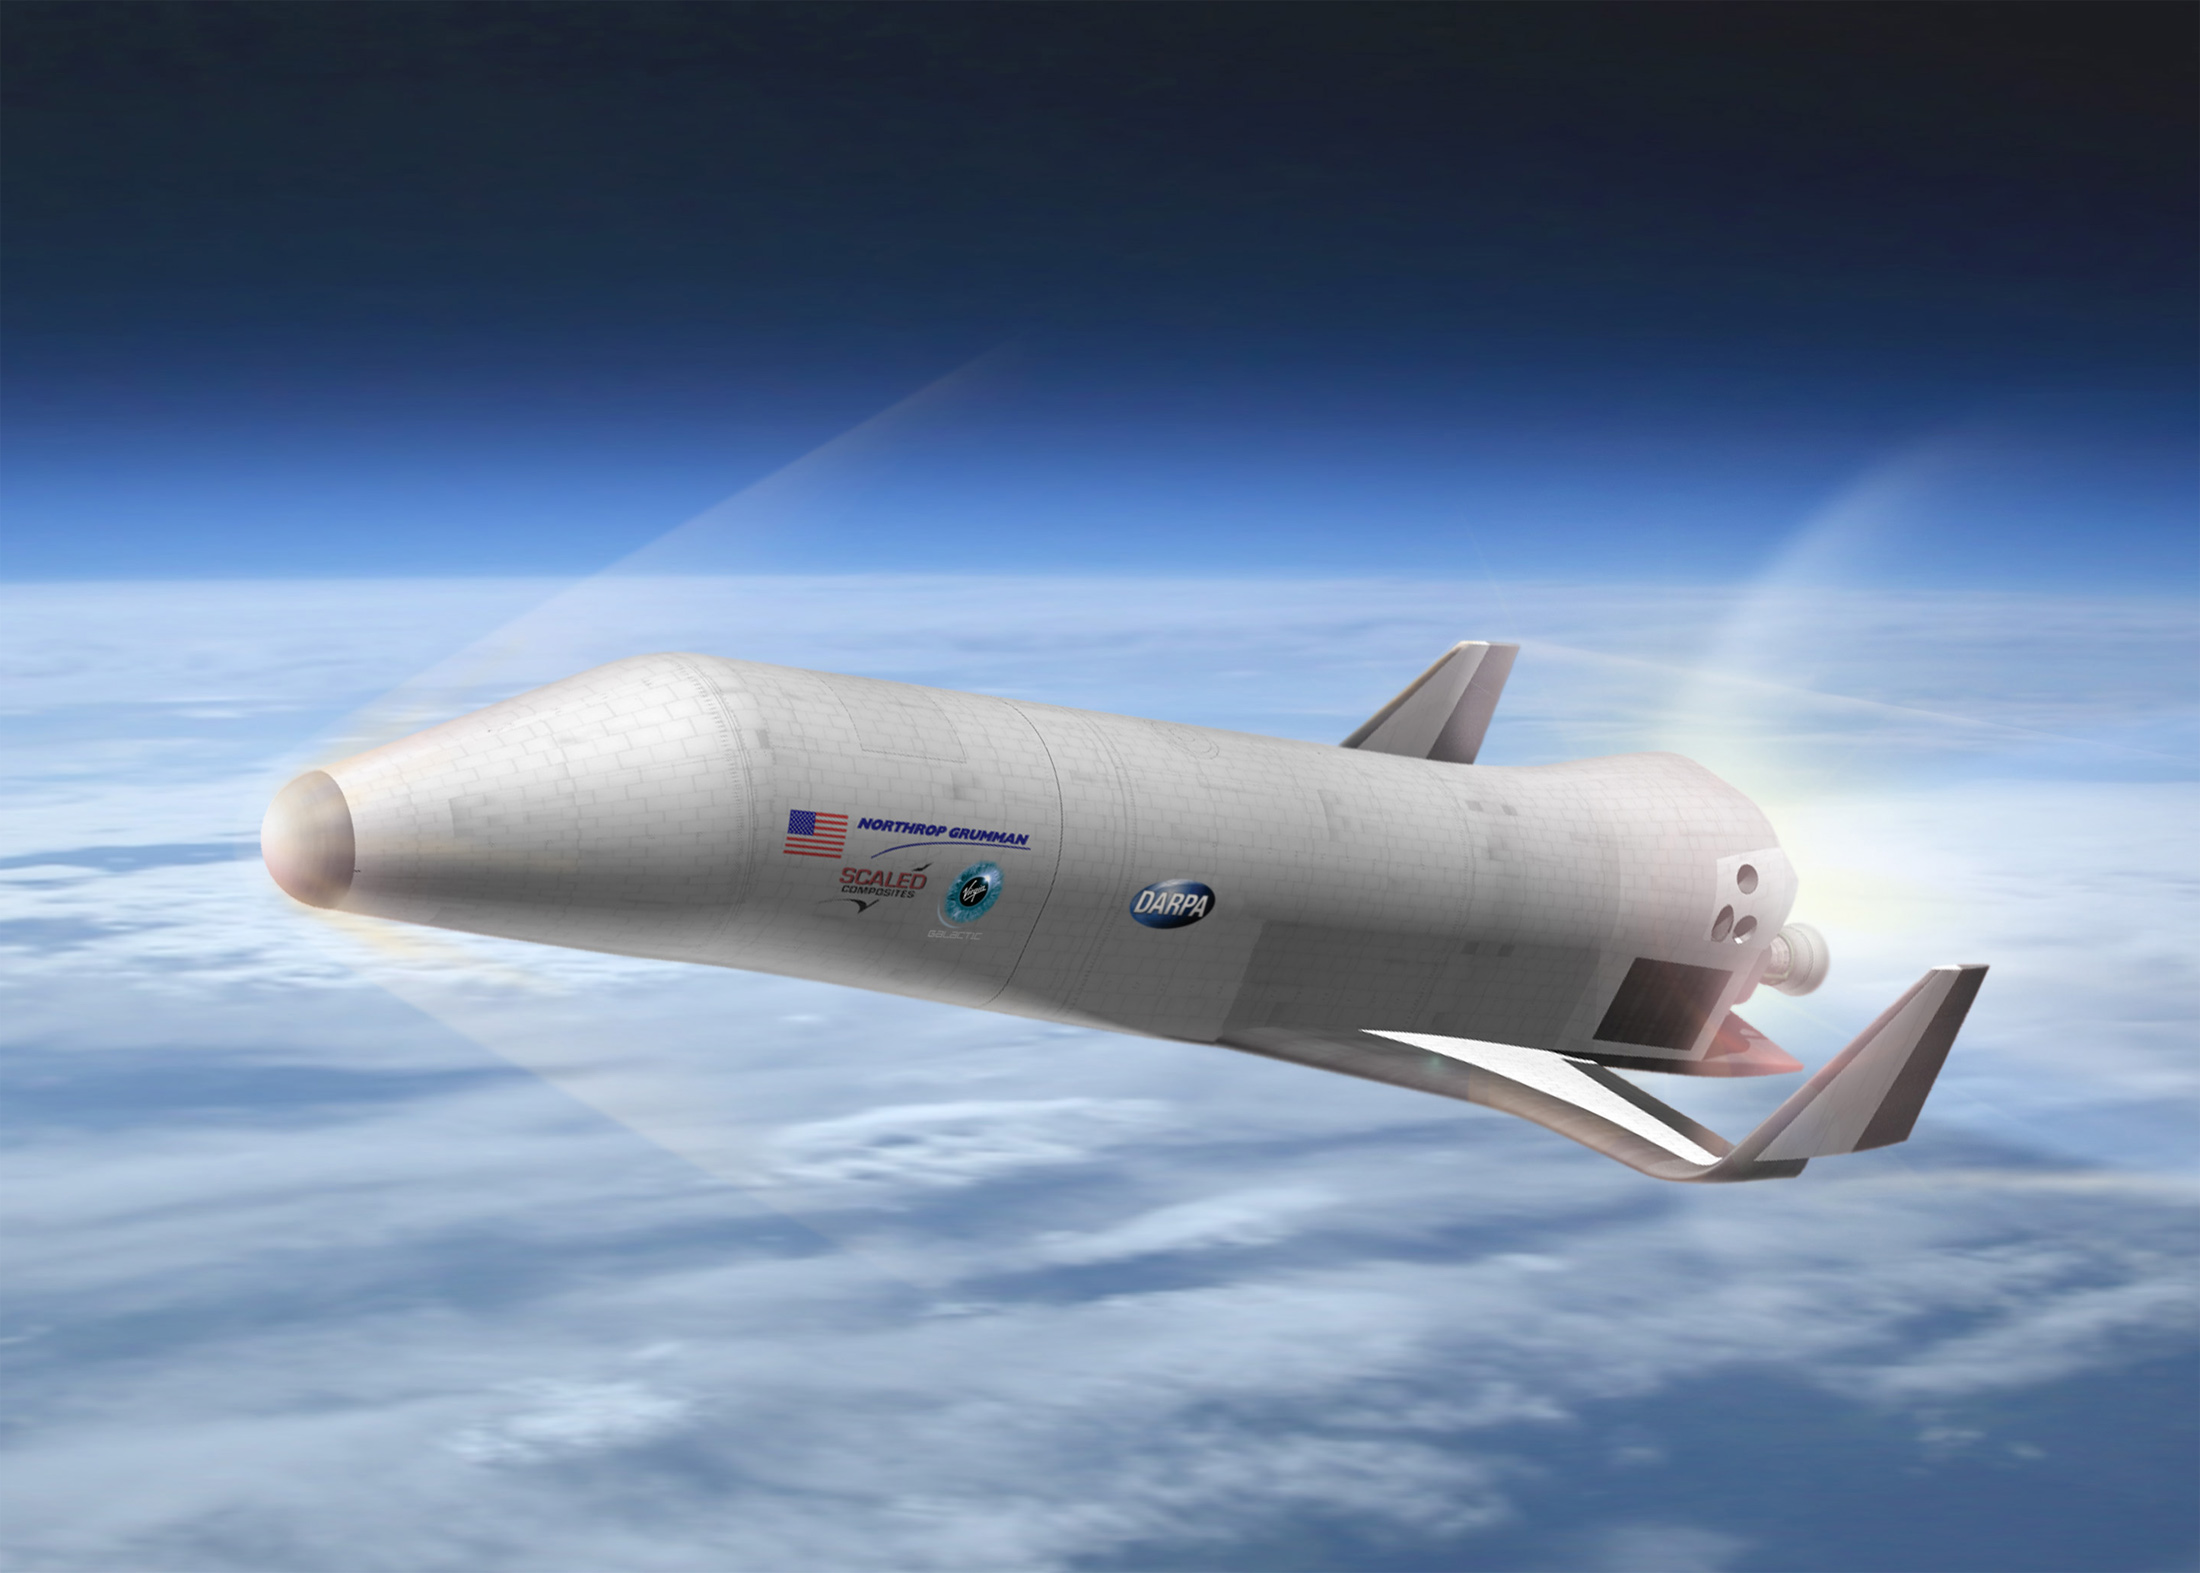 La Darpa (Defense Advanced Research Projects Agency) développe un projet de véhicule suborbital dans le cadre de la première partie du programme XS-1. Ici, le concept proposé par Northrop Grumman, Scaled Composites et Virgin Galactic à l'agence américaine. © Northrop Grumman